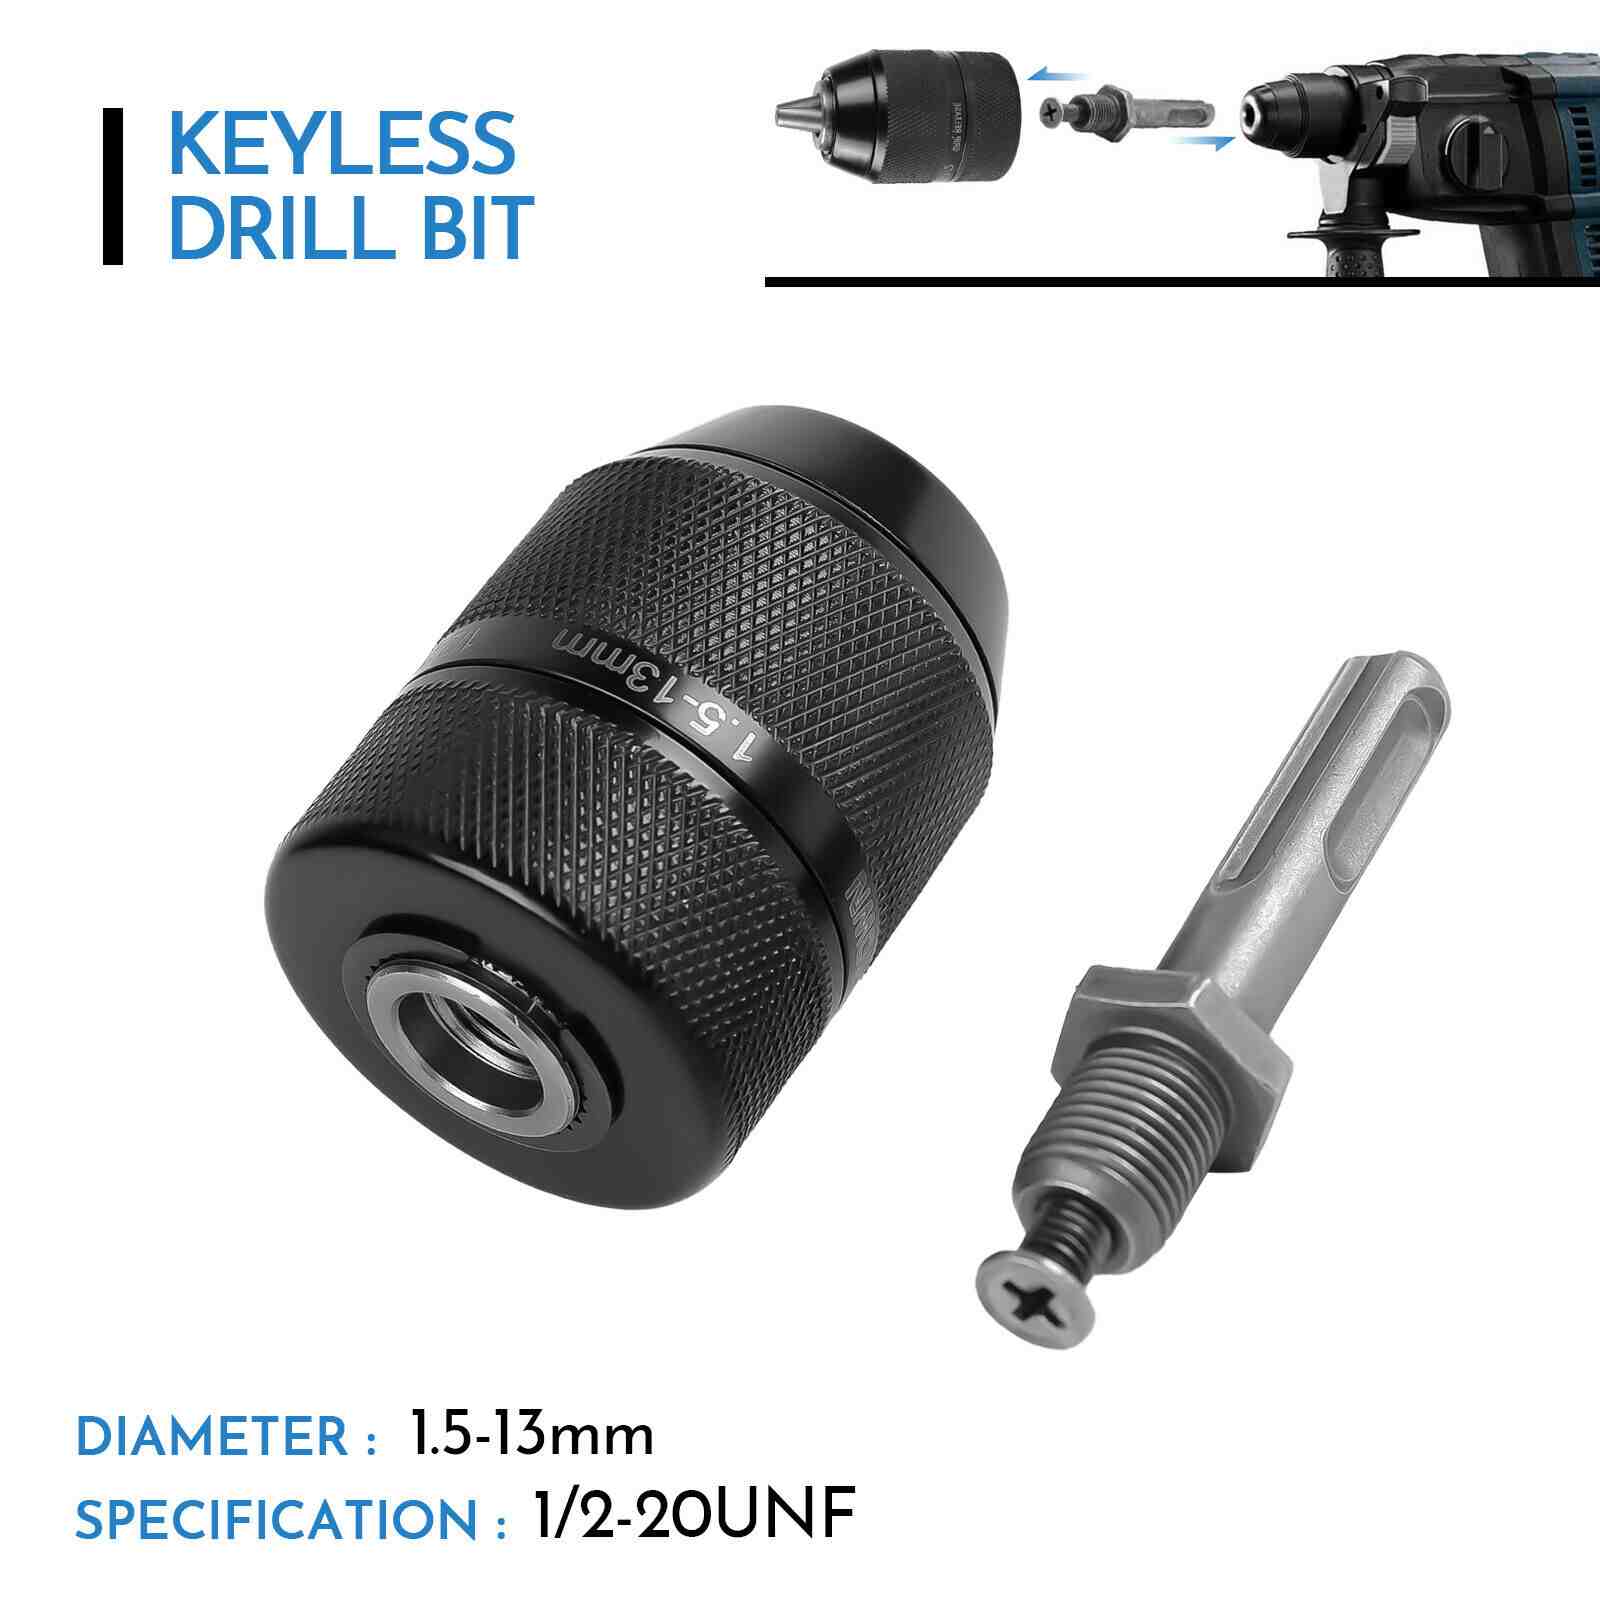 Feature of 1/2" Keyless Chuck Conversion Hex Shank Adapter Drill Bit